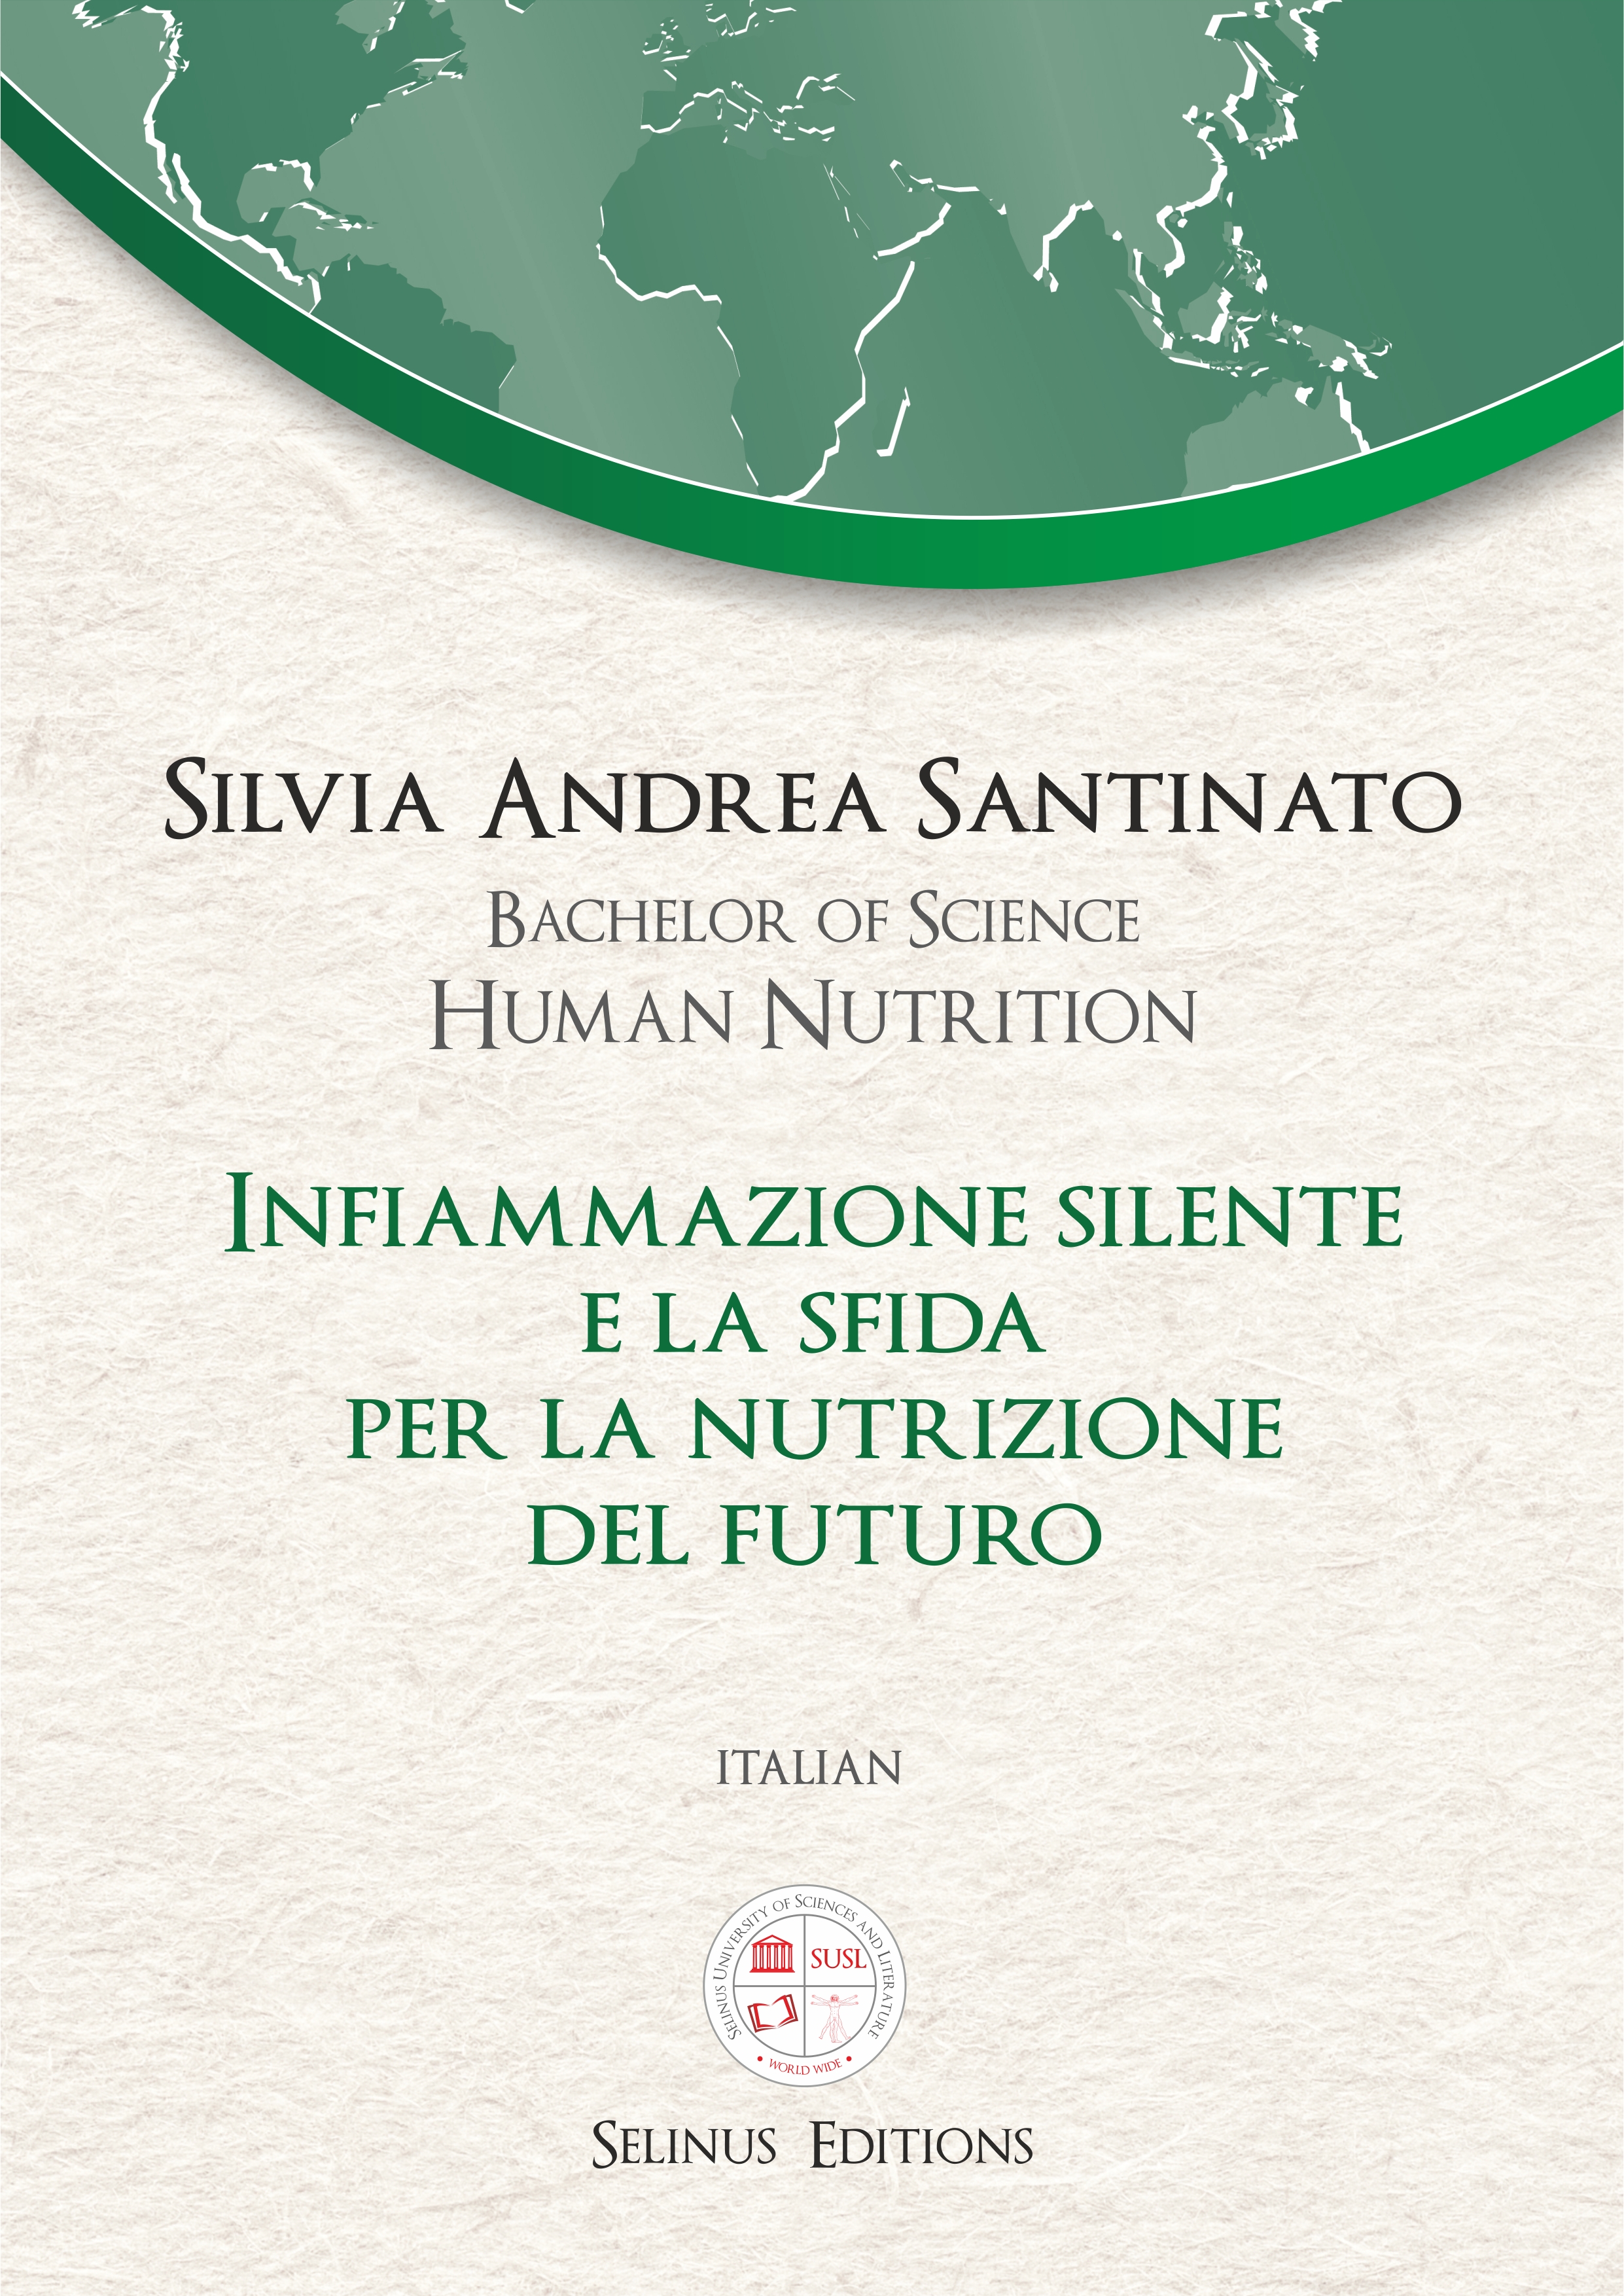 Thesis Silvia Andrea Santinato